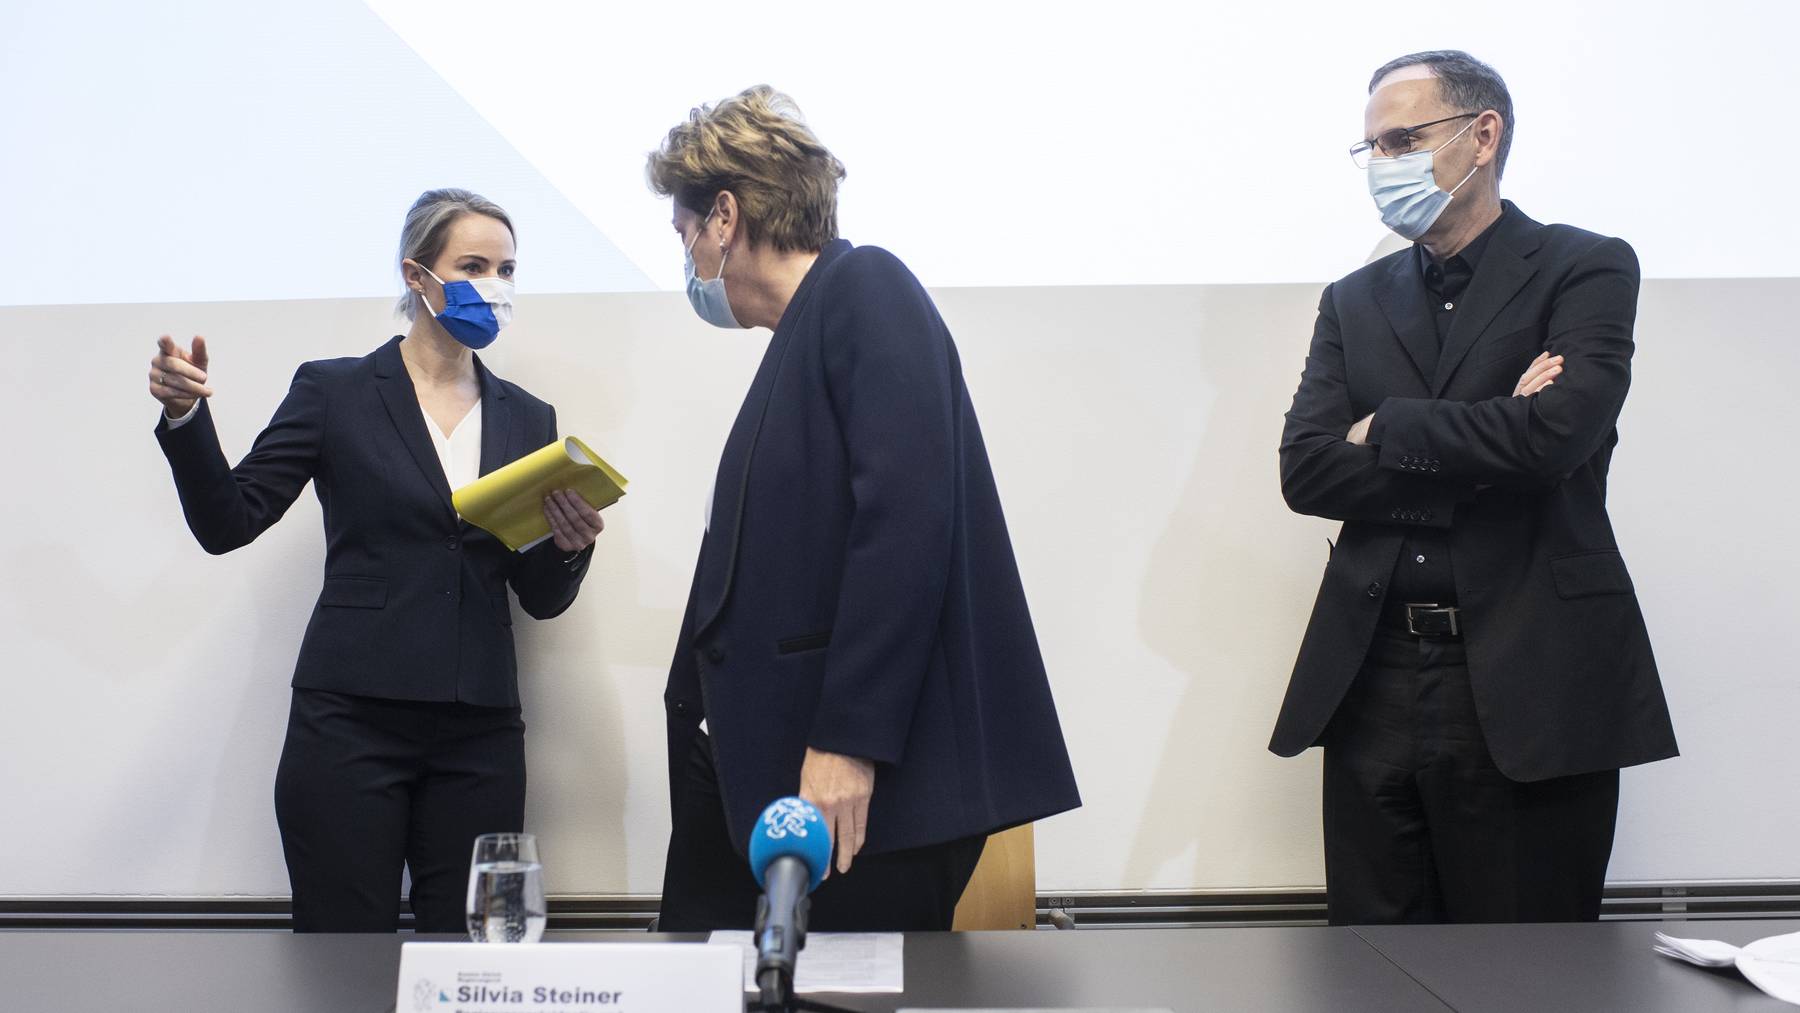 Von links nach rechts die Zürcher Regierungsräte Natalie Rickli, Silvia Steiner und Mario Fehr.